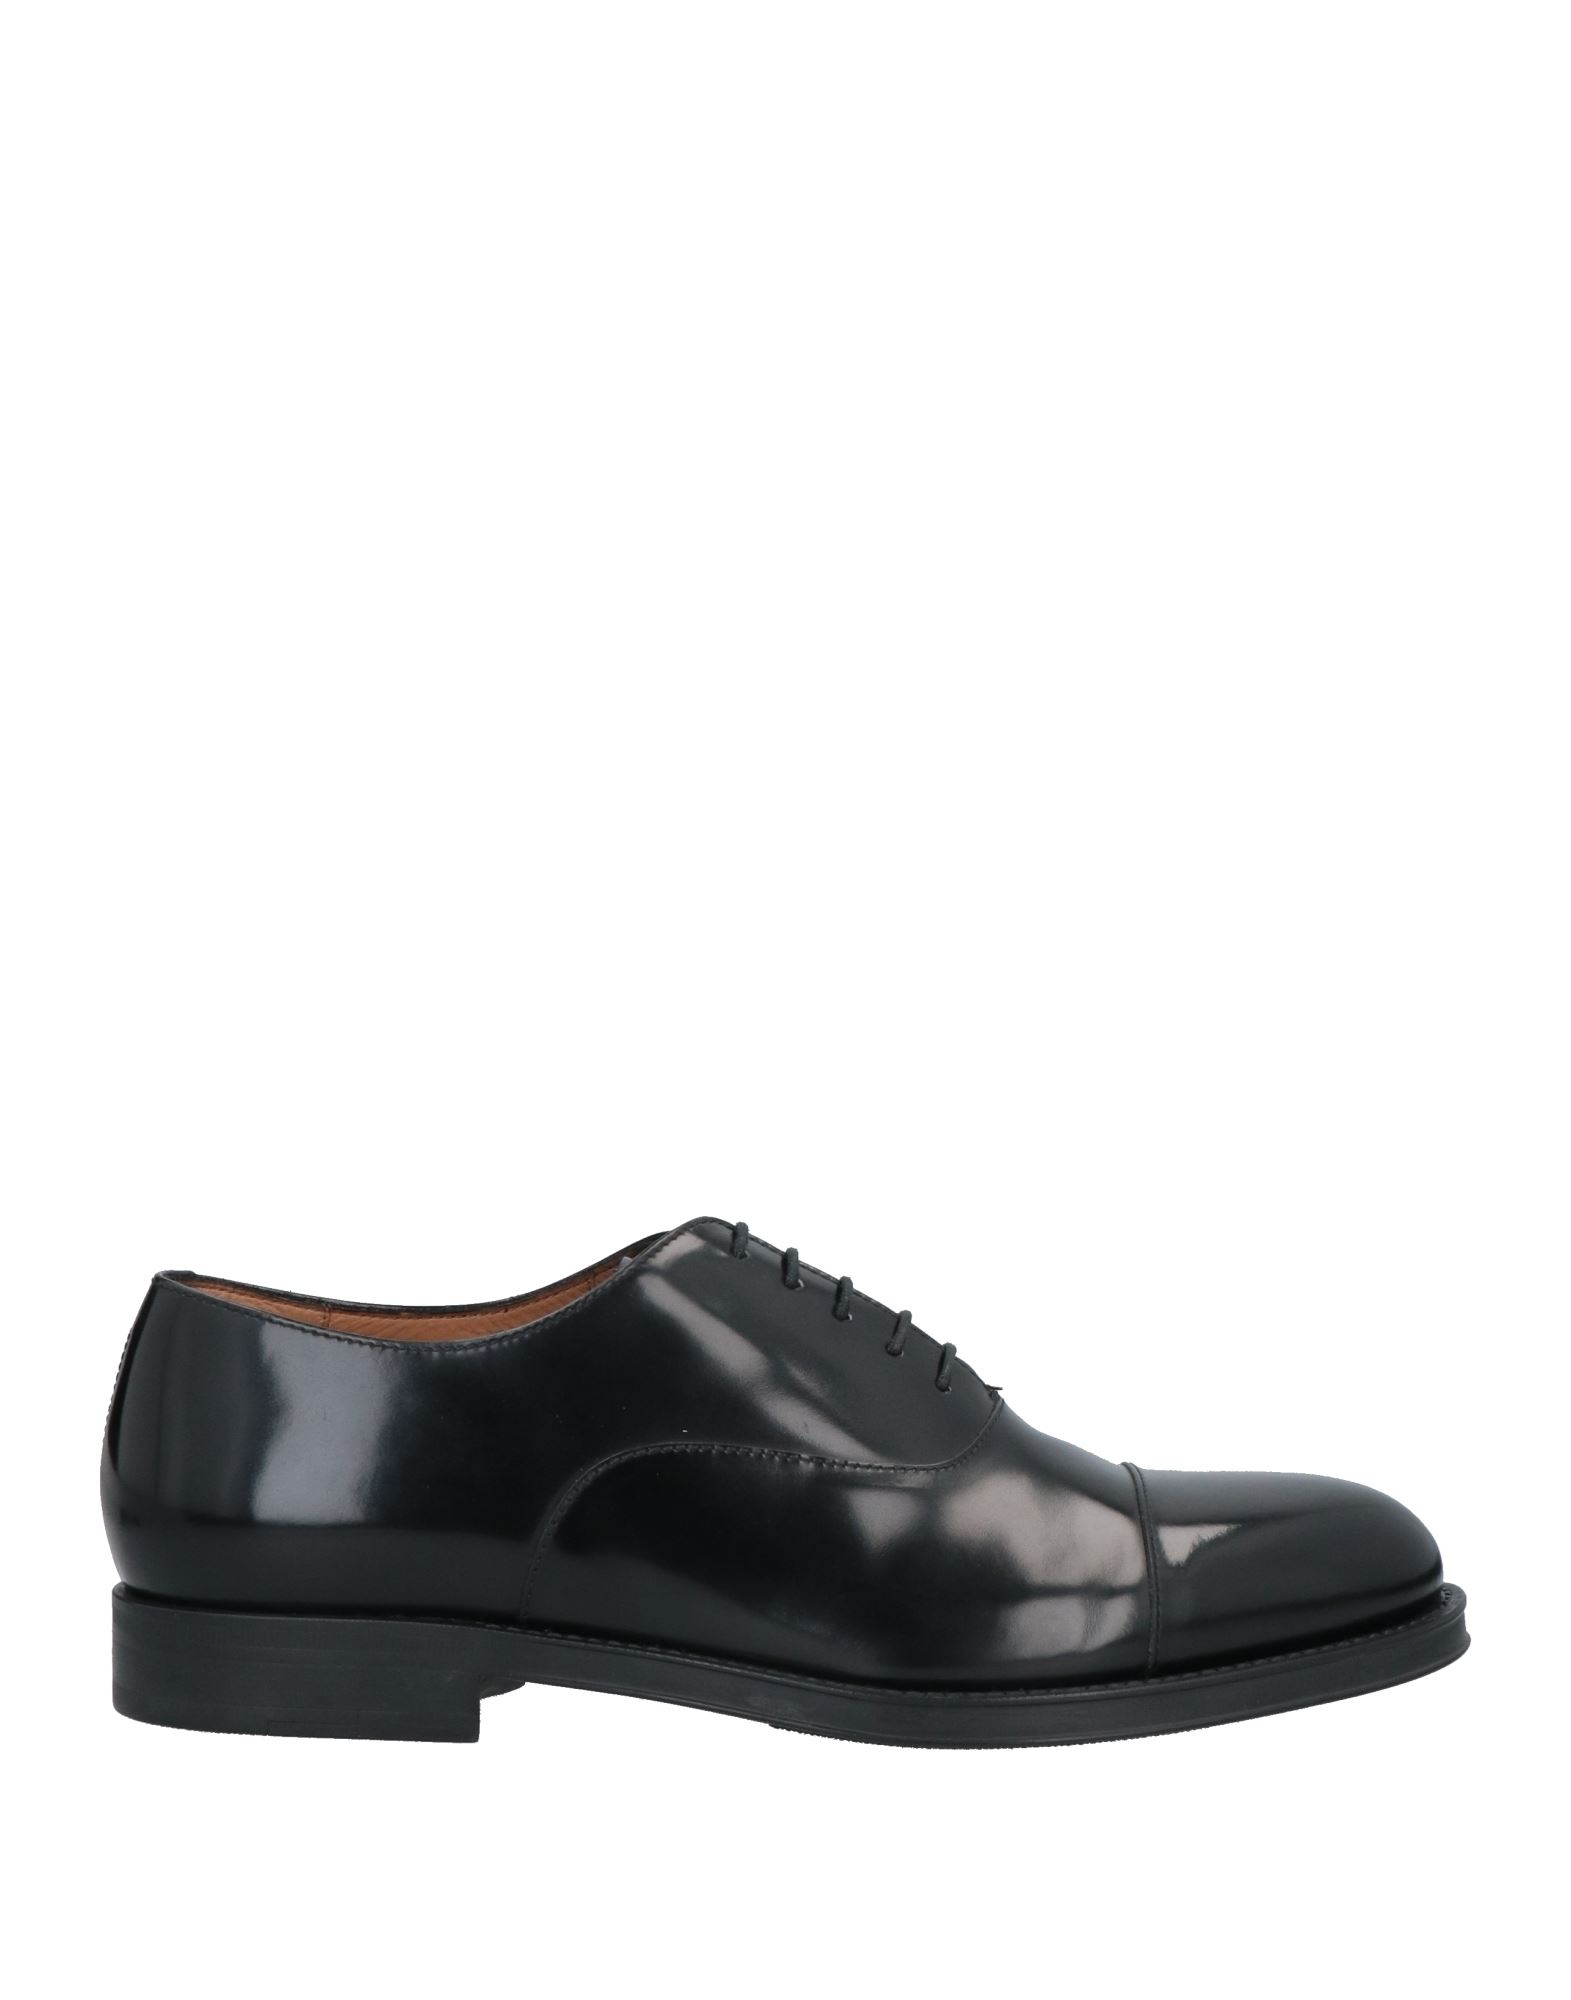 Giorgio Armani Man Lace-up Shoes Black Size 13 Bull Skin